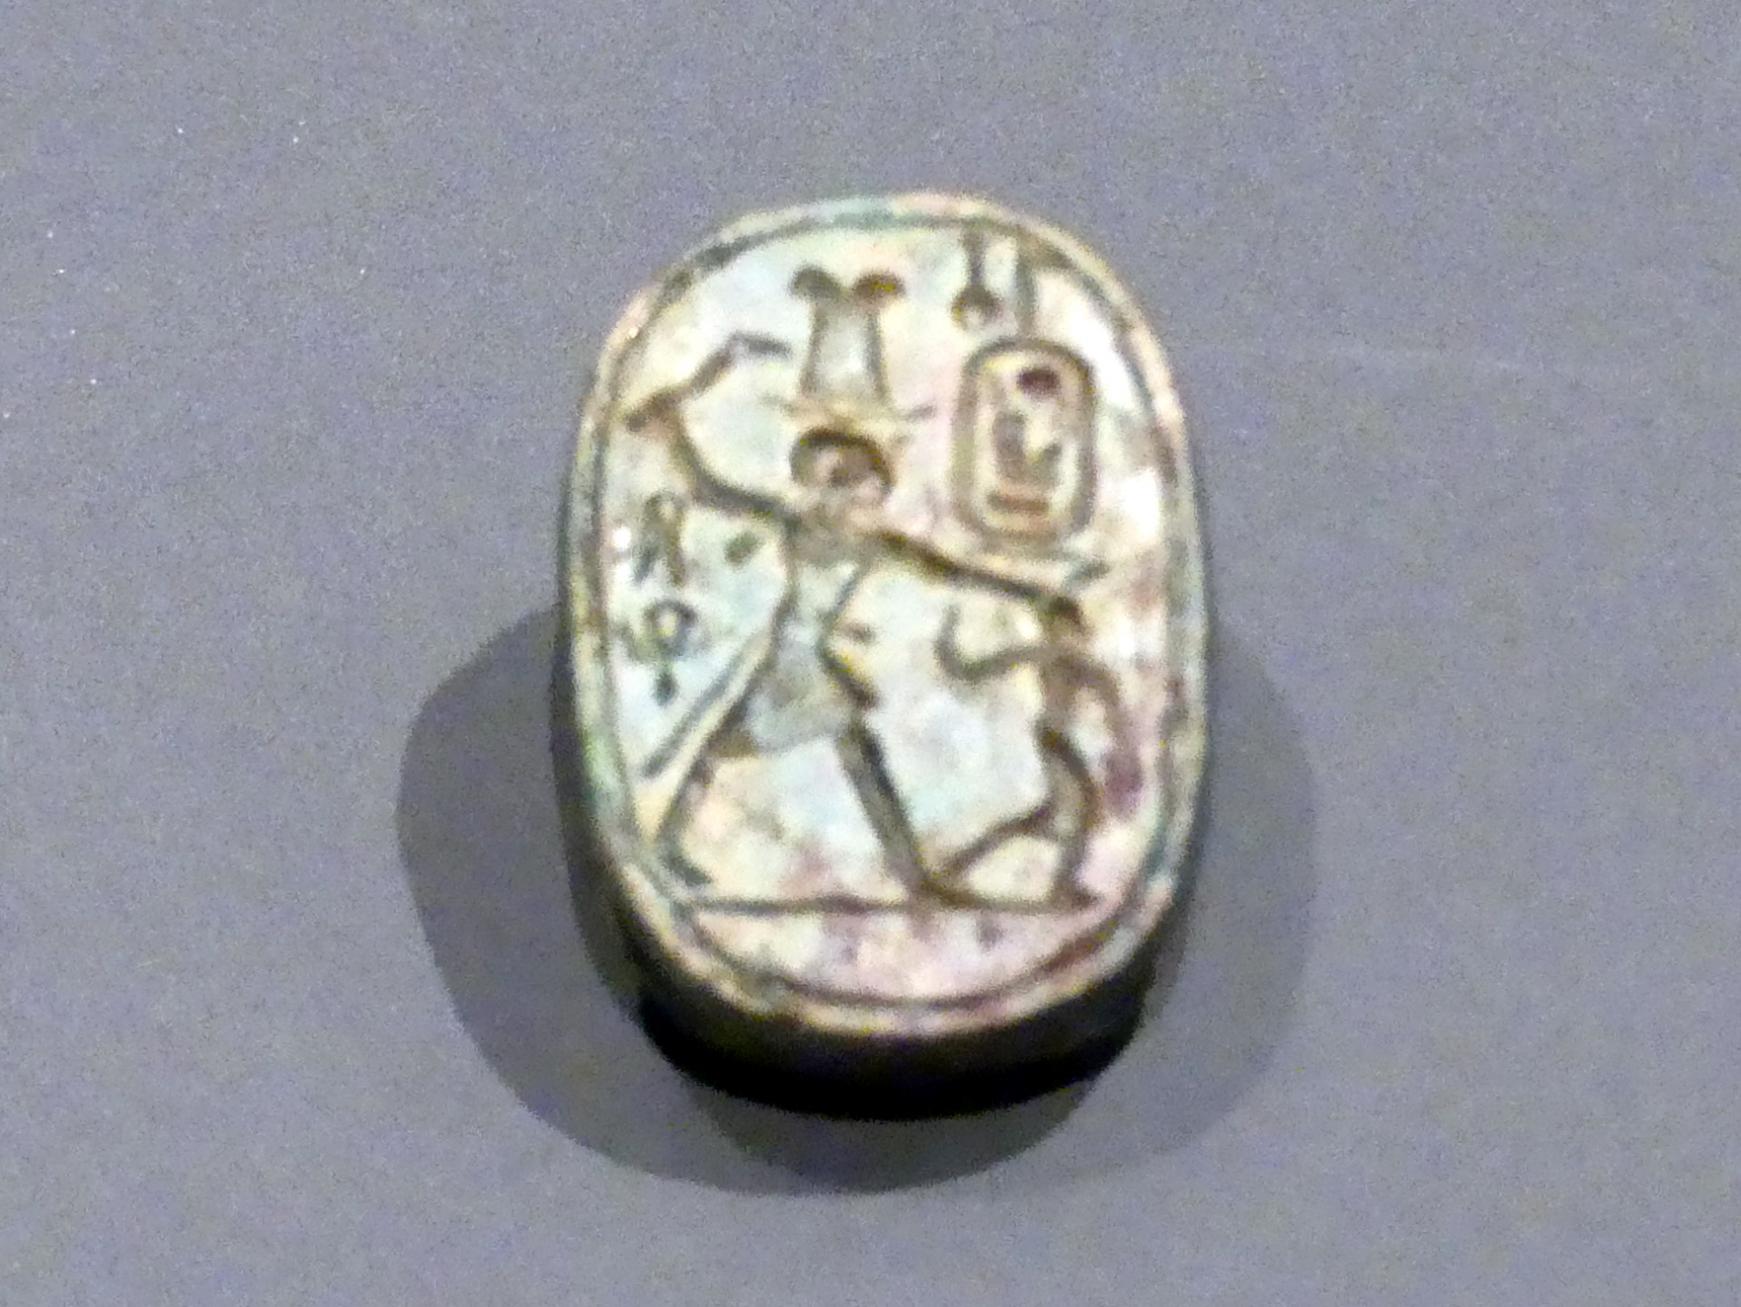 Skarabäus mit der Darstellung: Pharao Amenophis III. beim Erschlagen eines Feindes, 18. Dynastie, 1210 - 966 v. Chr., 1380 v. Chr.